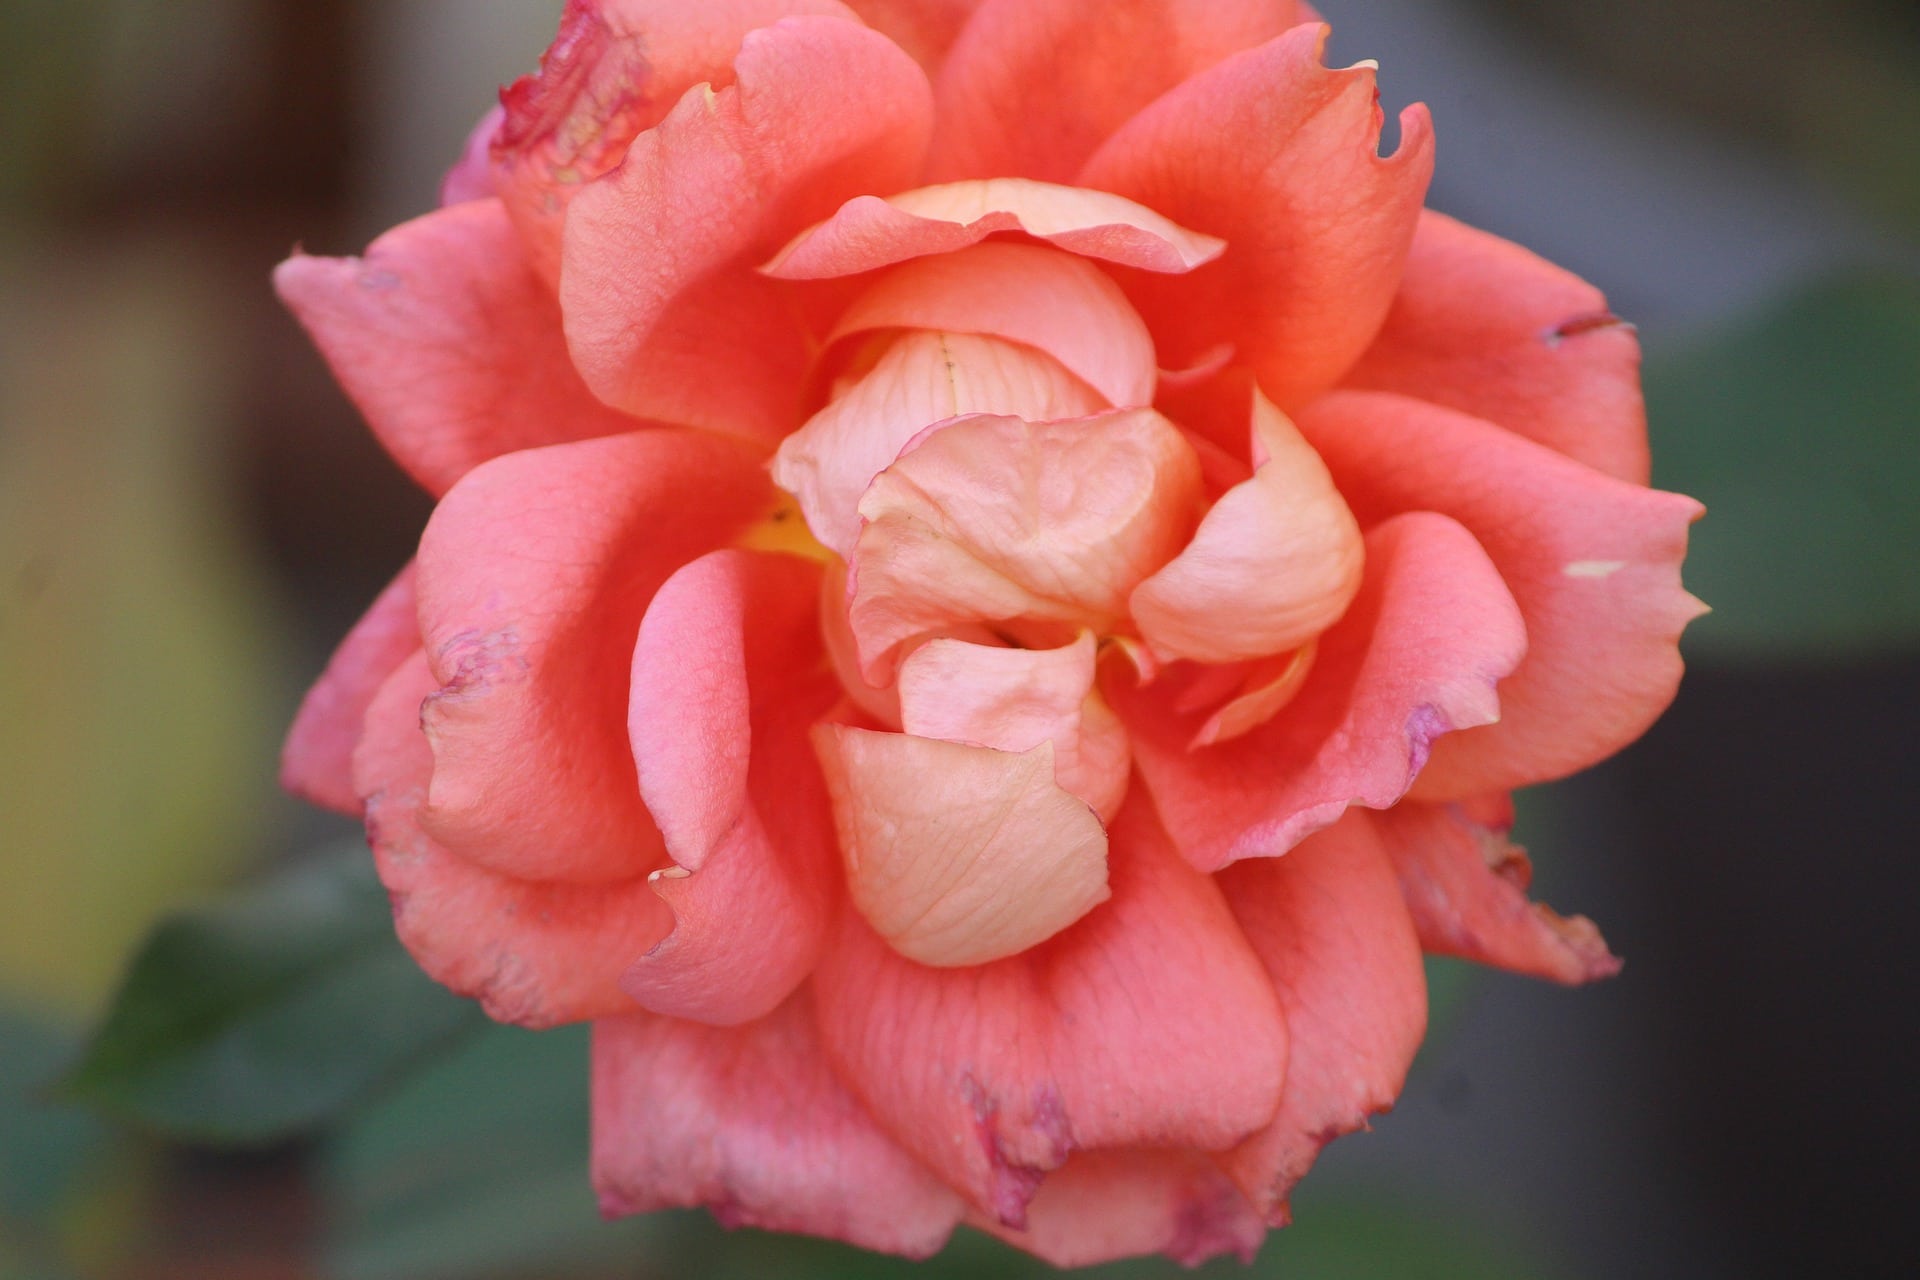 Centifolia Roses